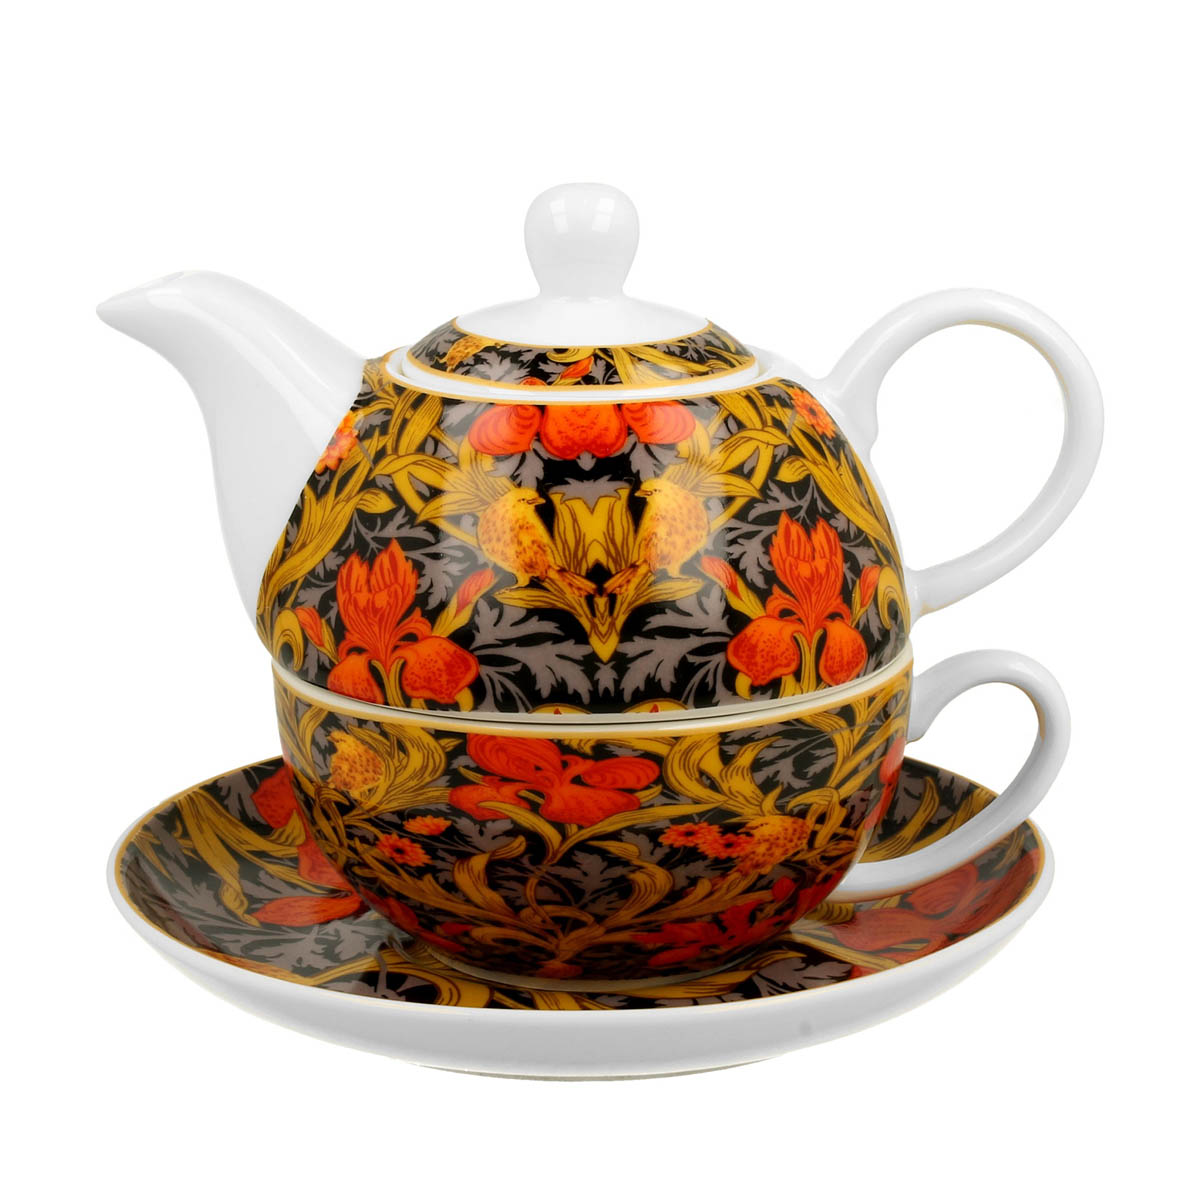 Solitaire porcelaine \'William Morris Collection\' orange marron - hauteur 13 cm - [R8802]